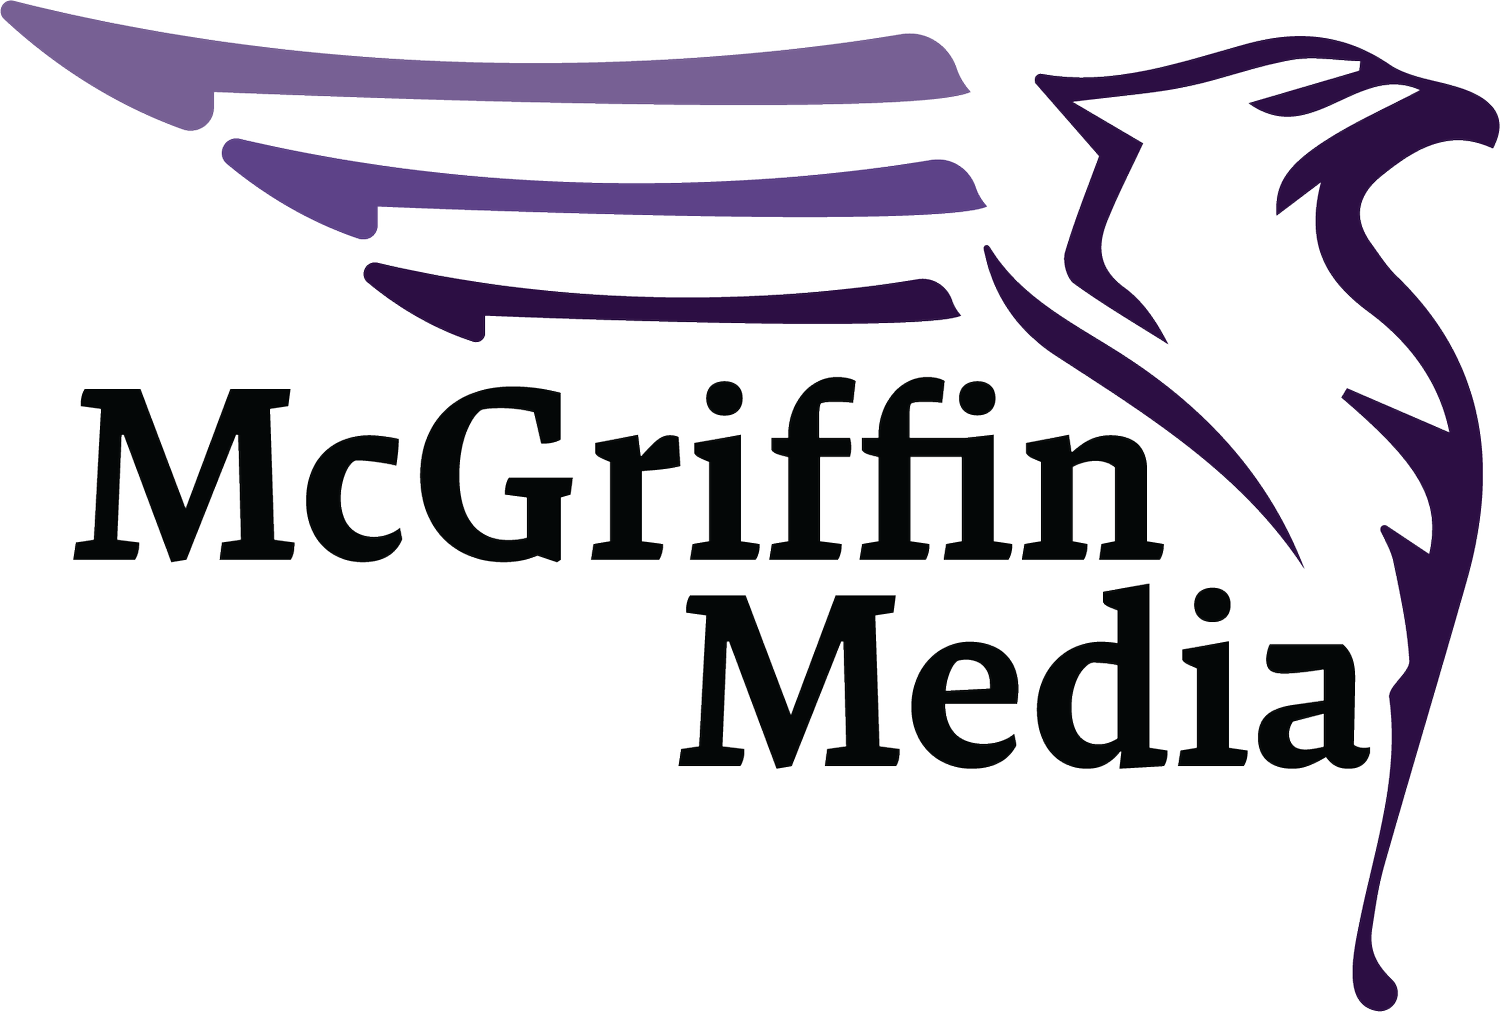 McGriffin Media LLC